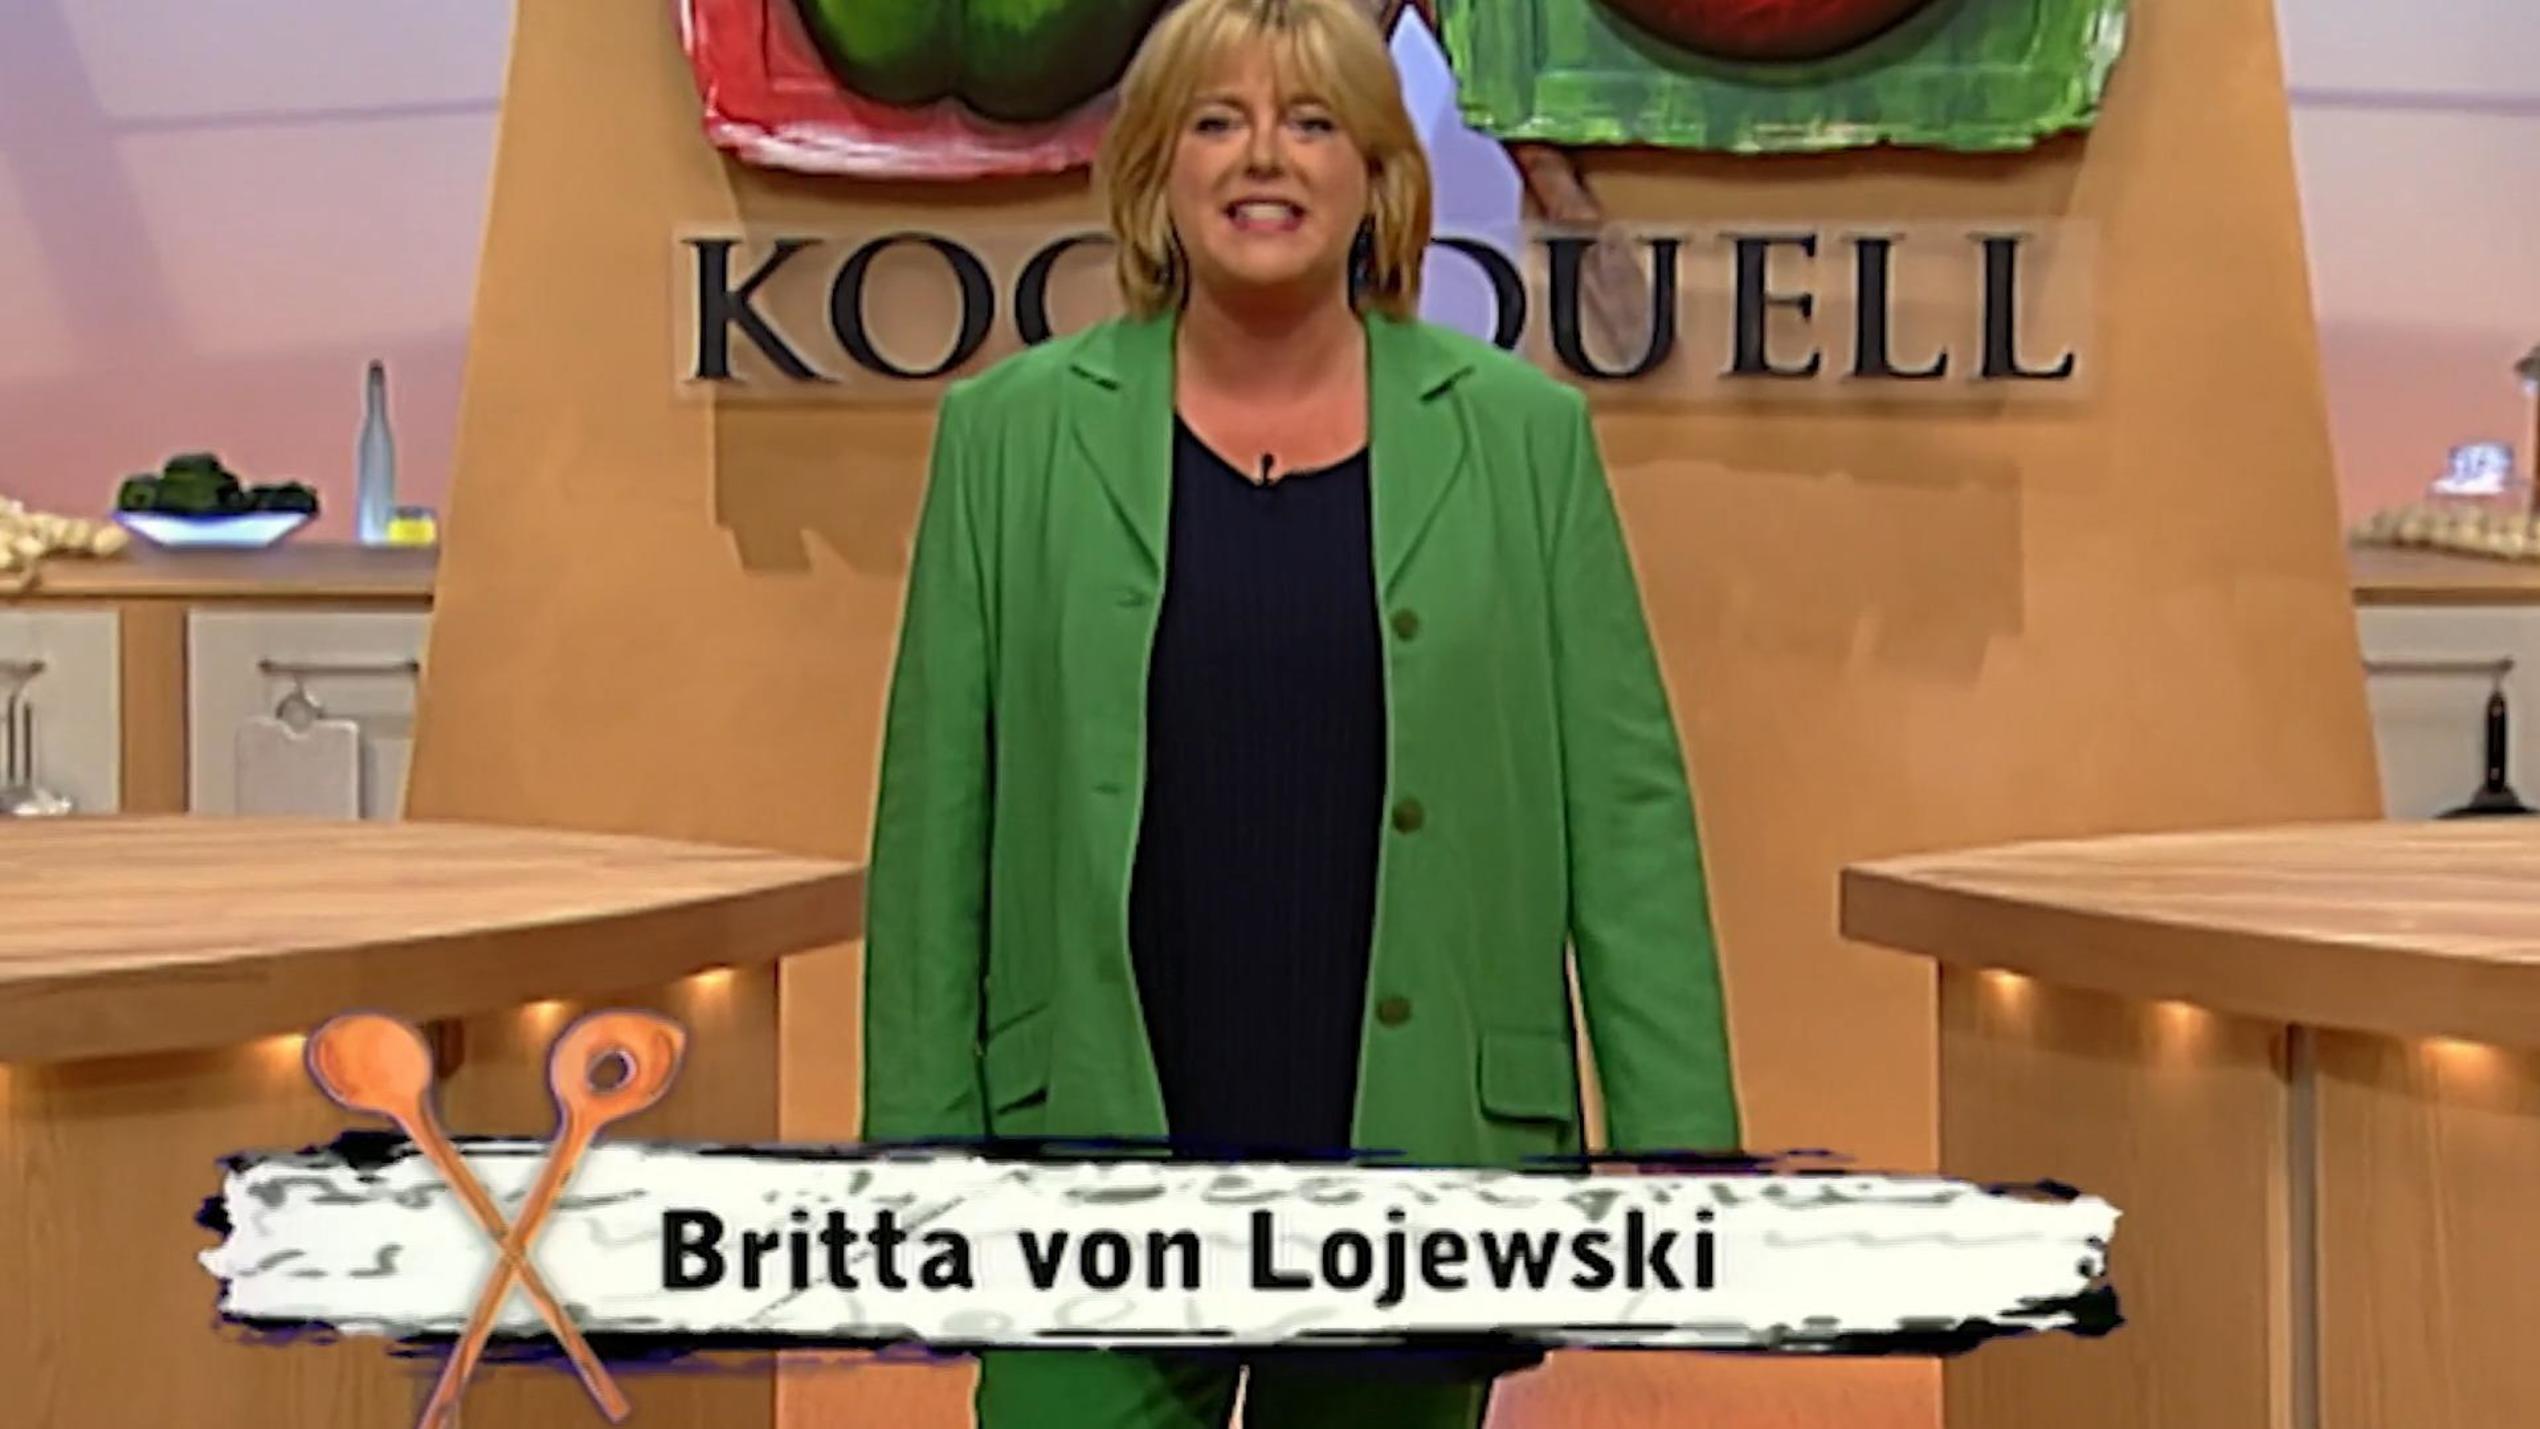 1997 ging Britta von Lojewski zum ersten Mal mit dem "Kochduell" auf Sendung. Seitdem ist viel passiert im Leben der 59-Jährigen. 